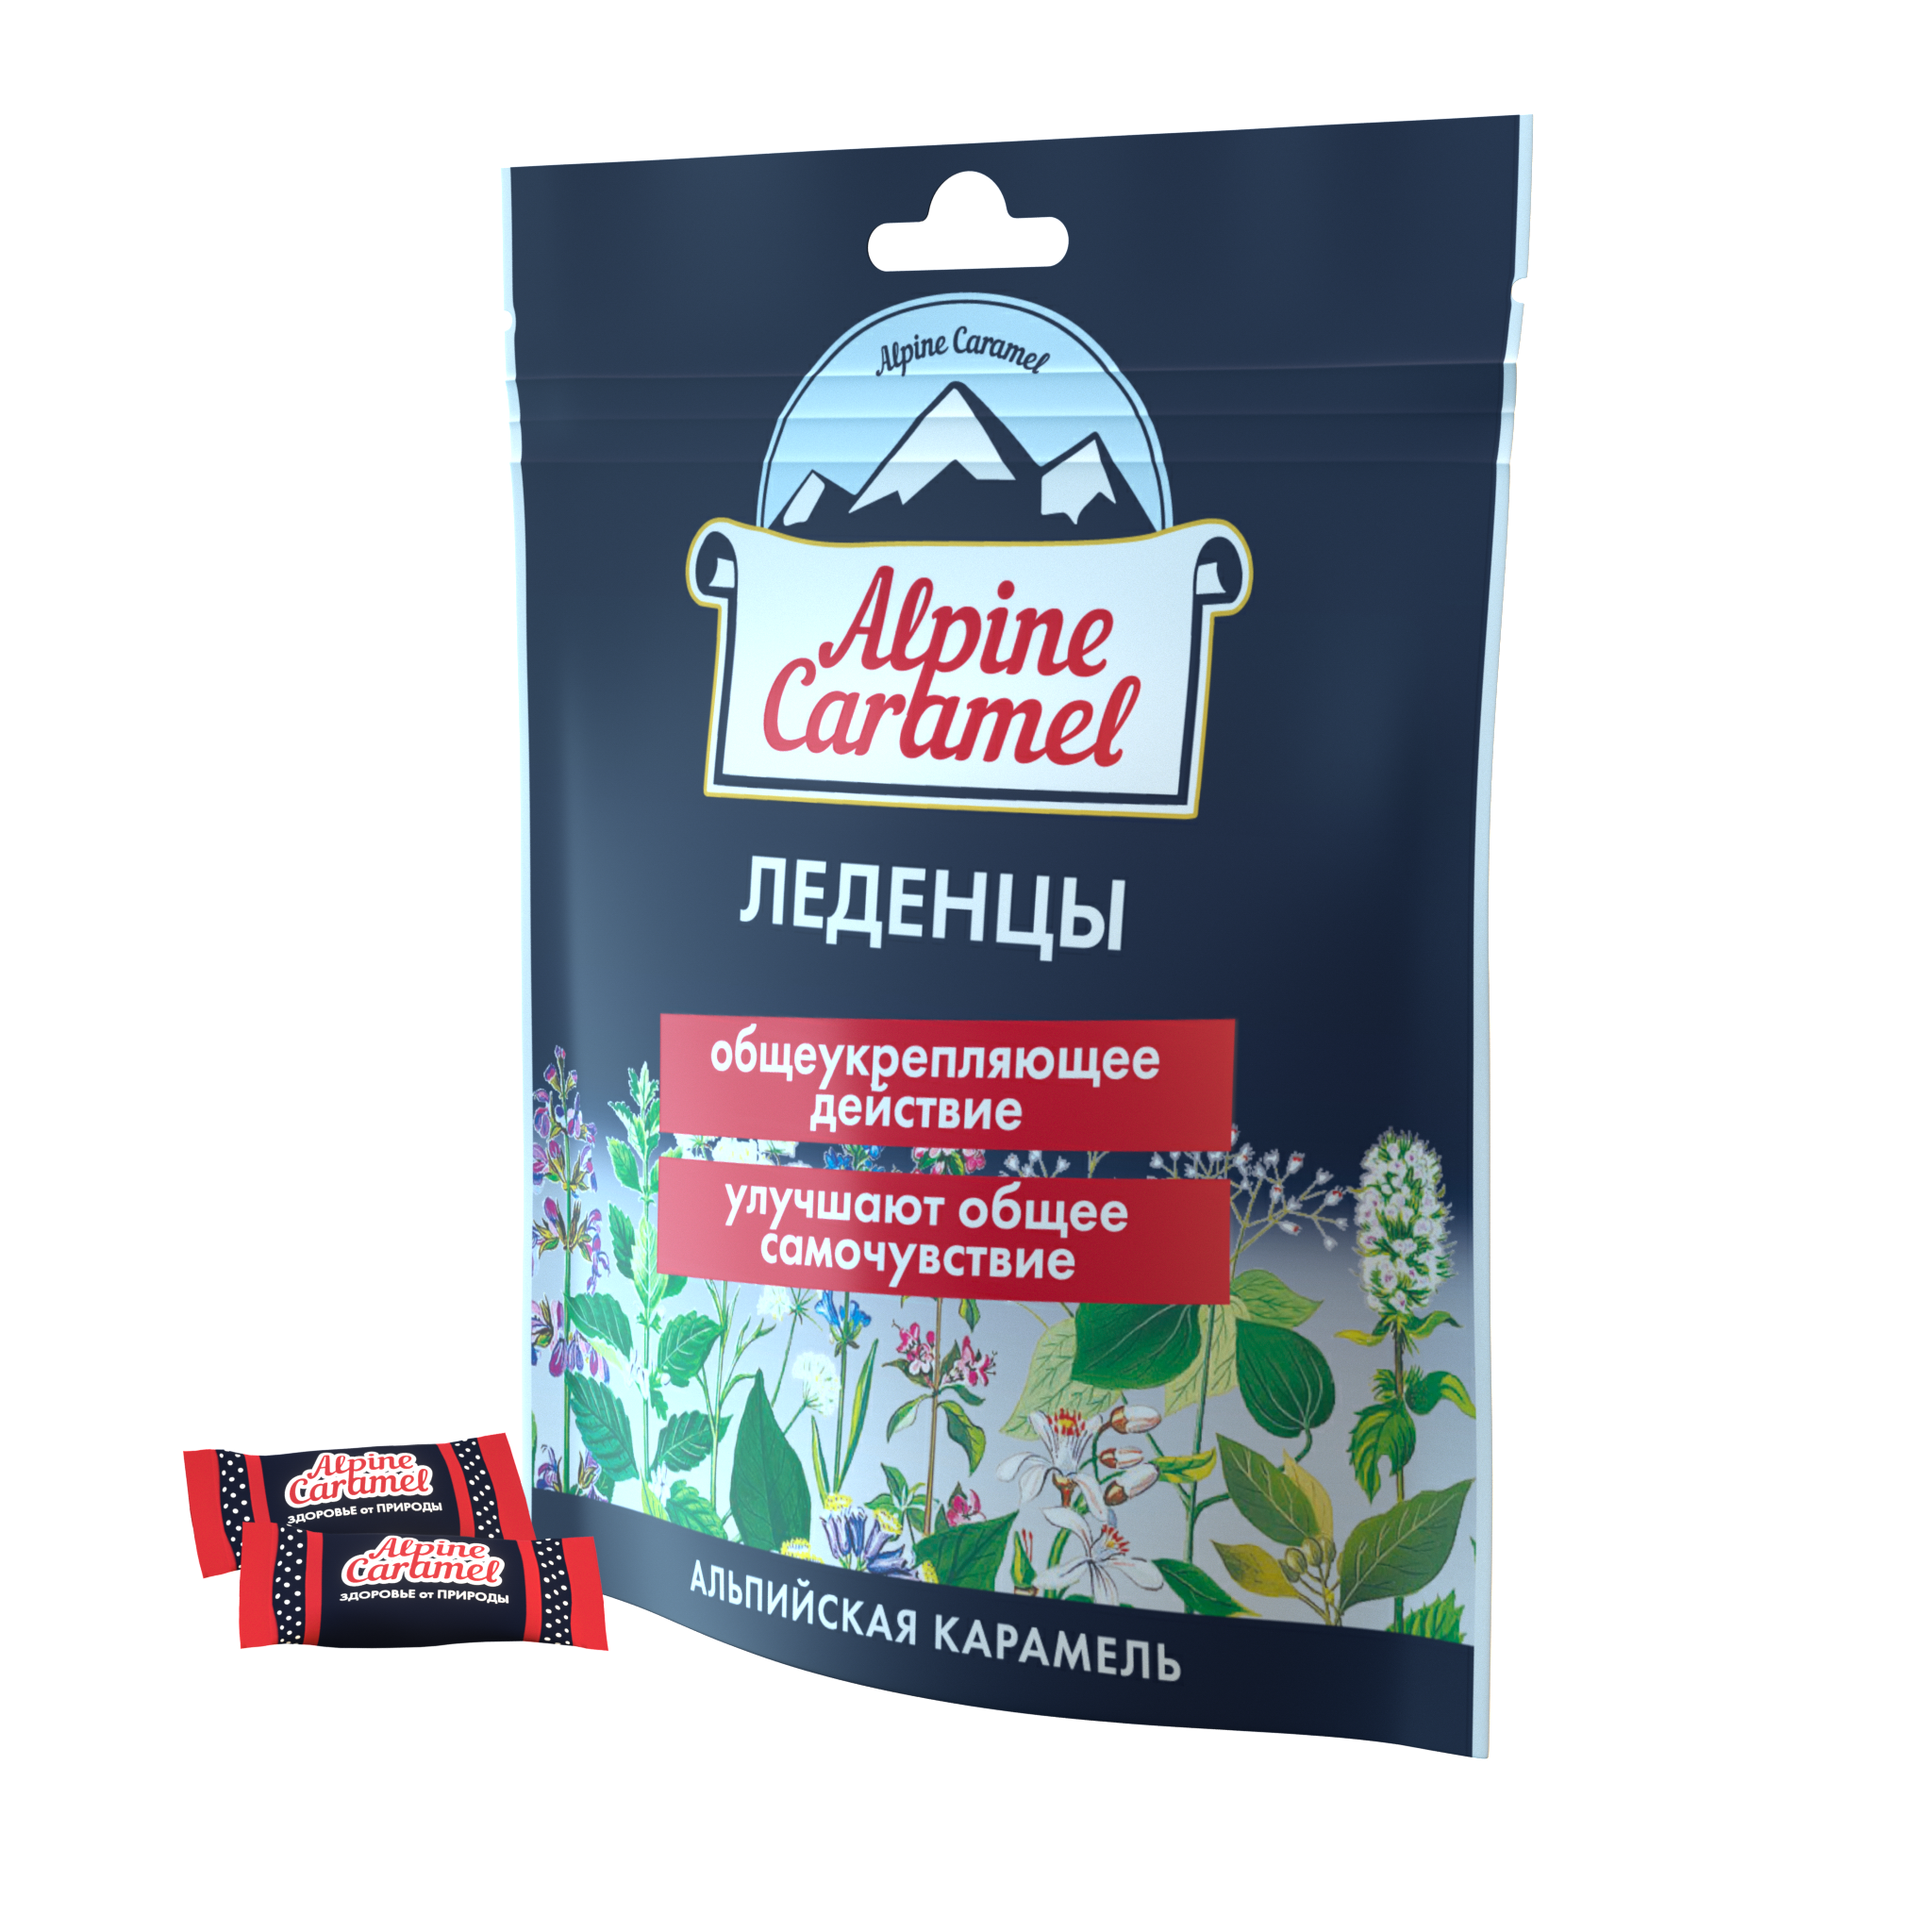 Alpine Caramel Альпийская Карамель леденцы, 75 г